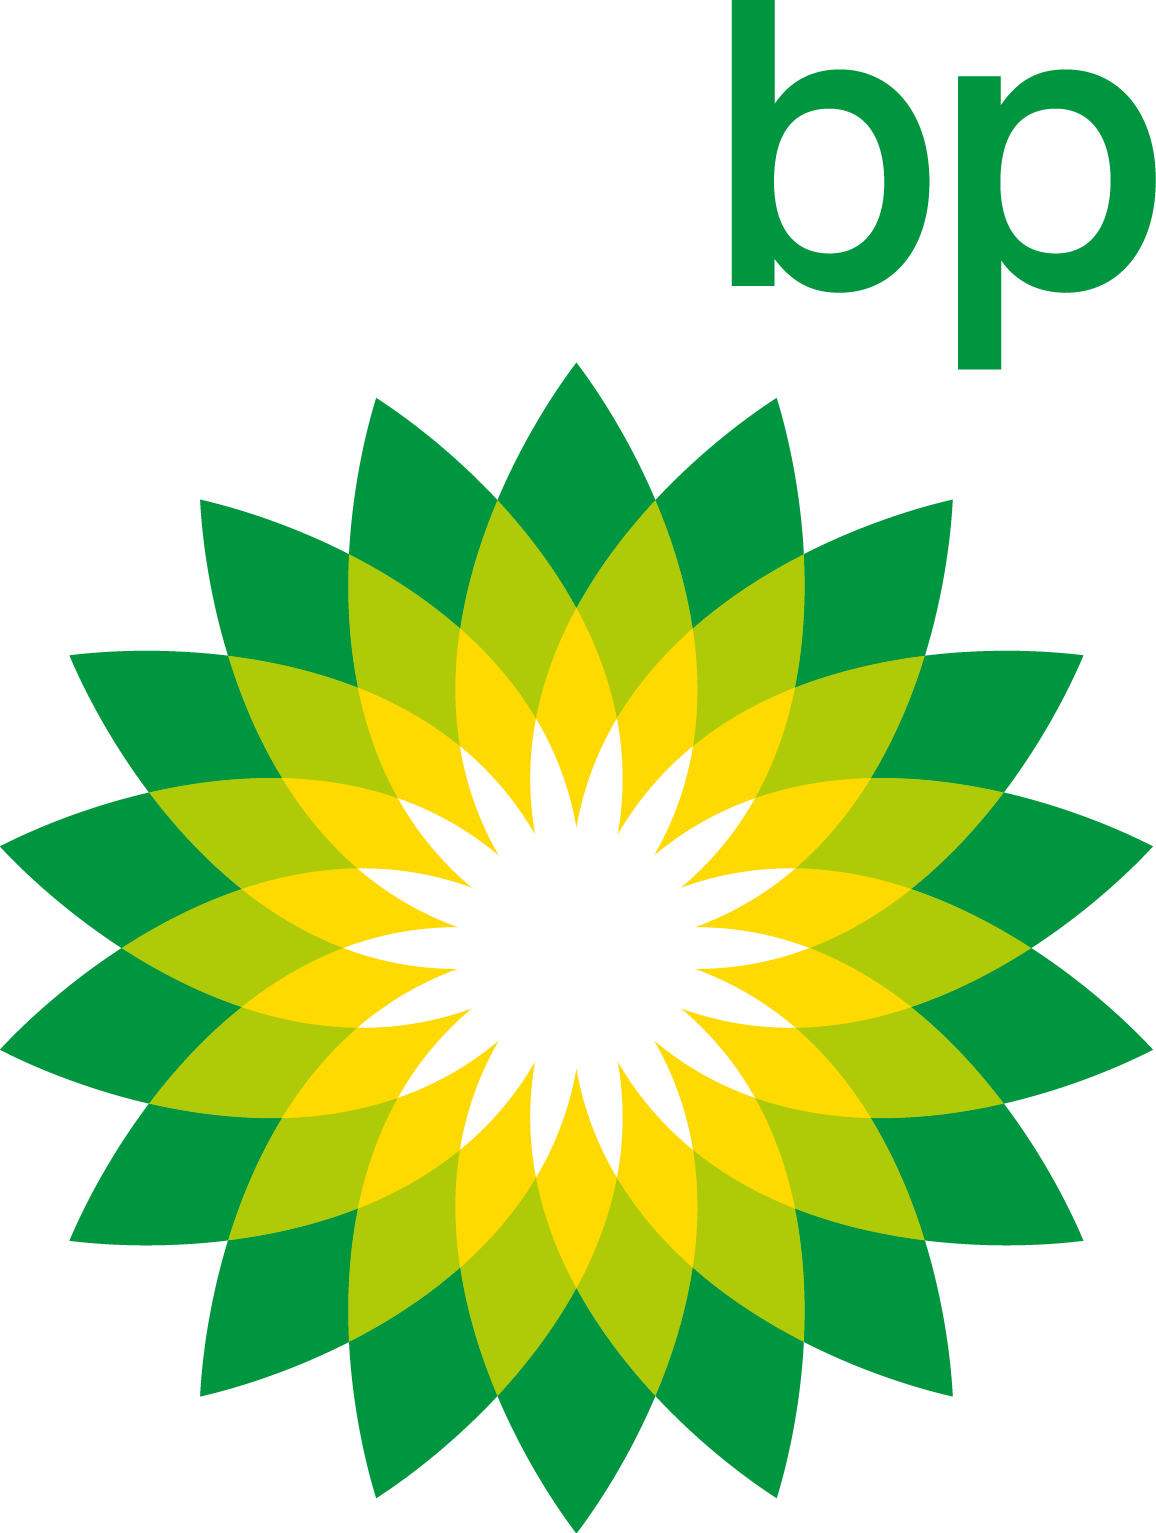 BP Logo (British Petroleum)